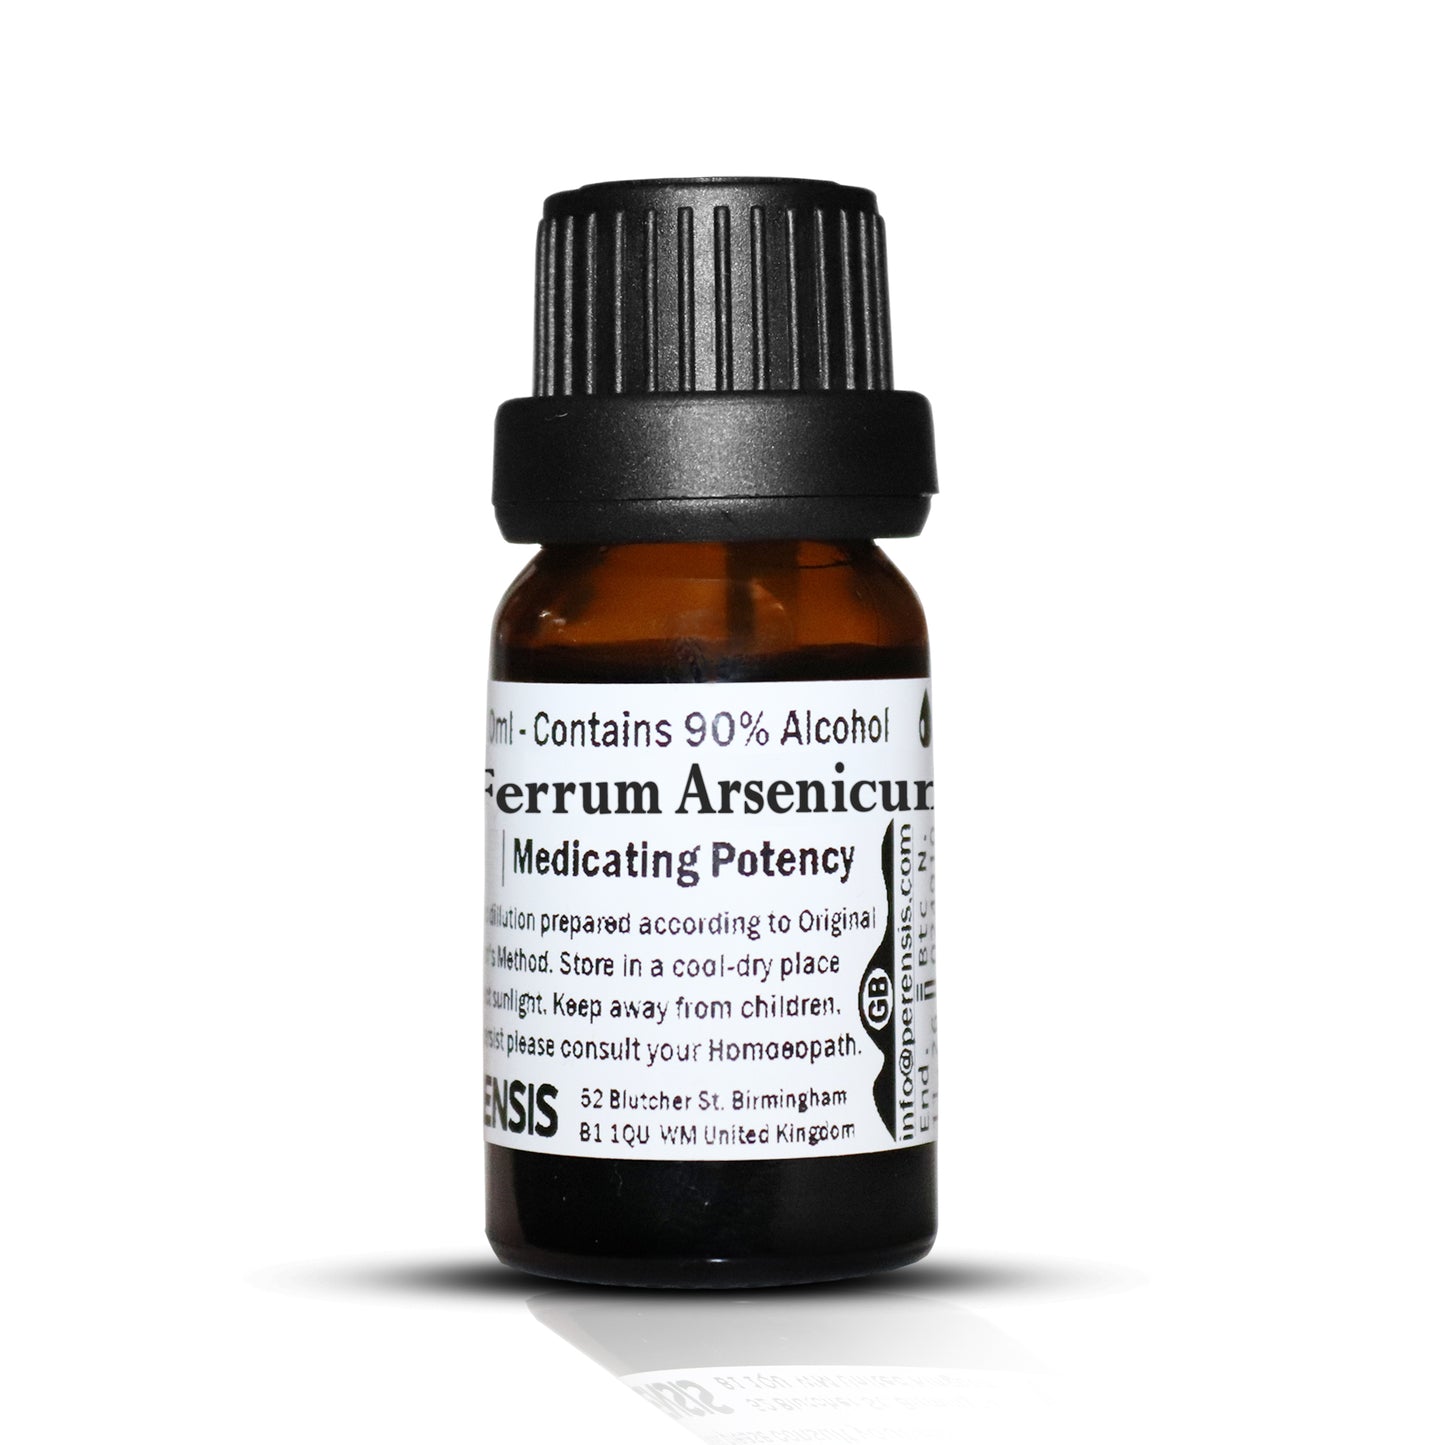 Ferrum Arsenicum